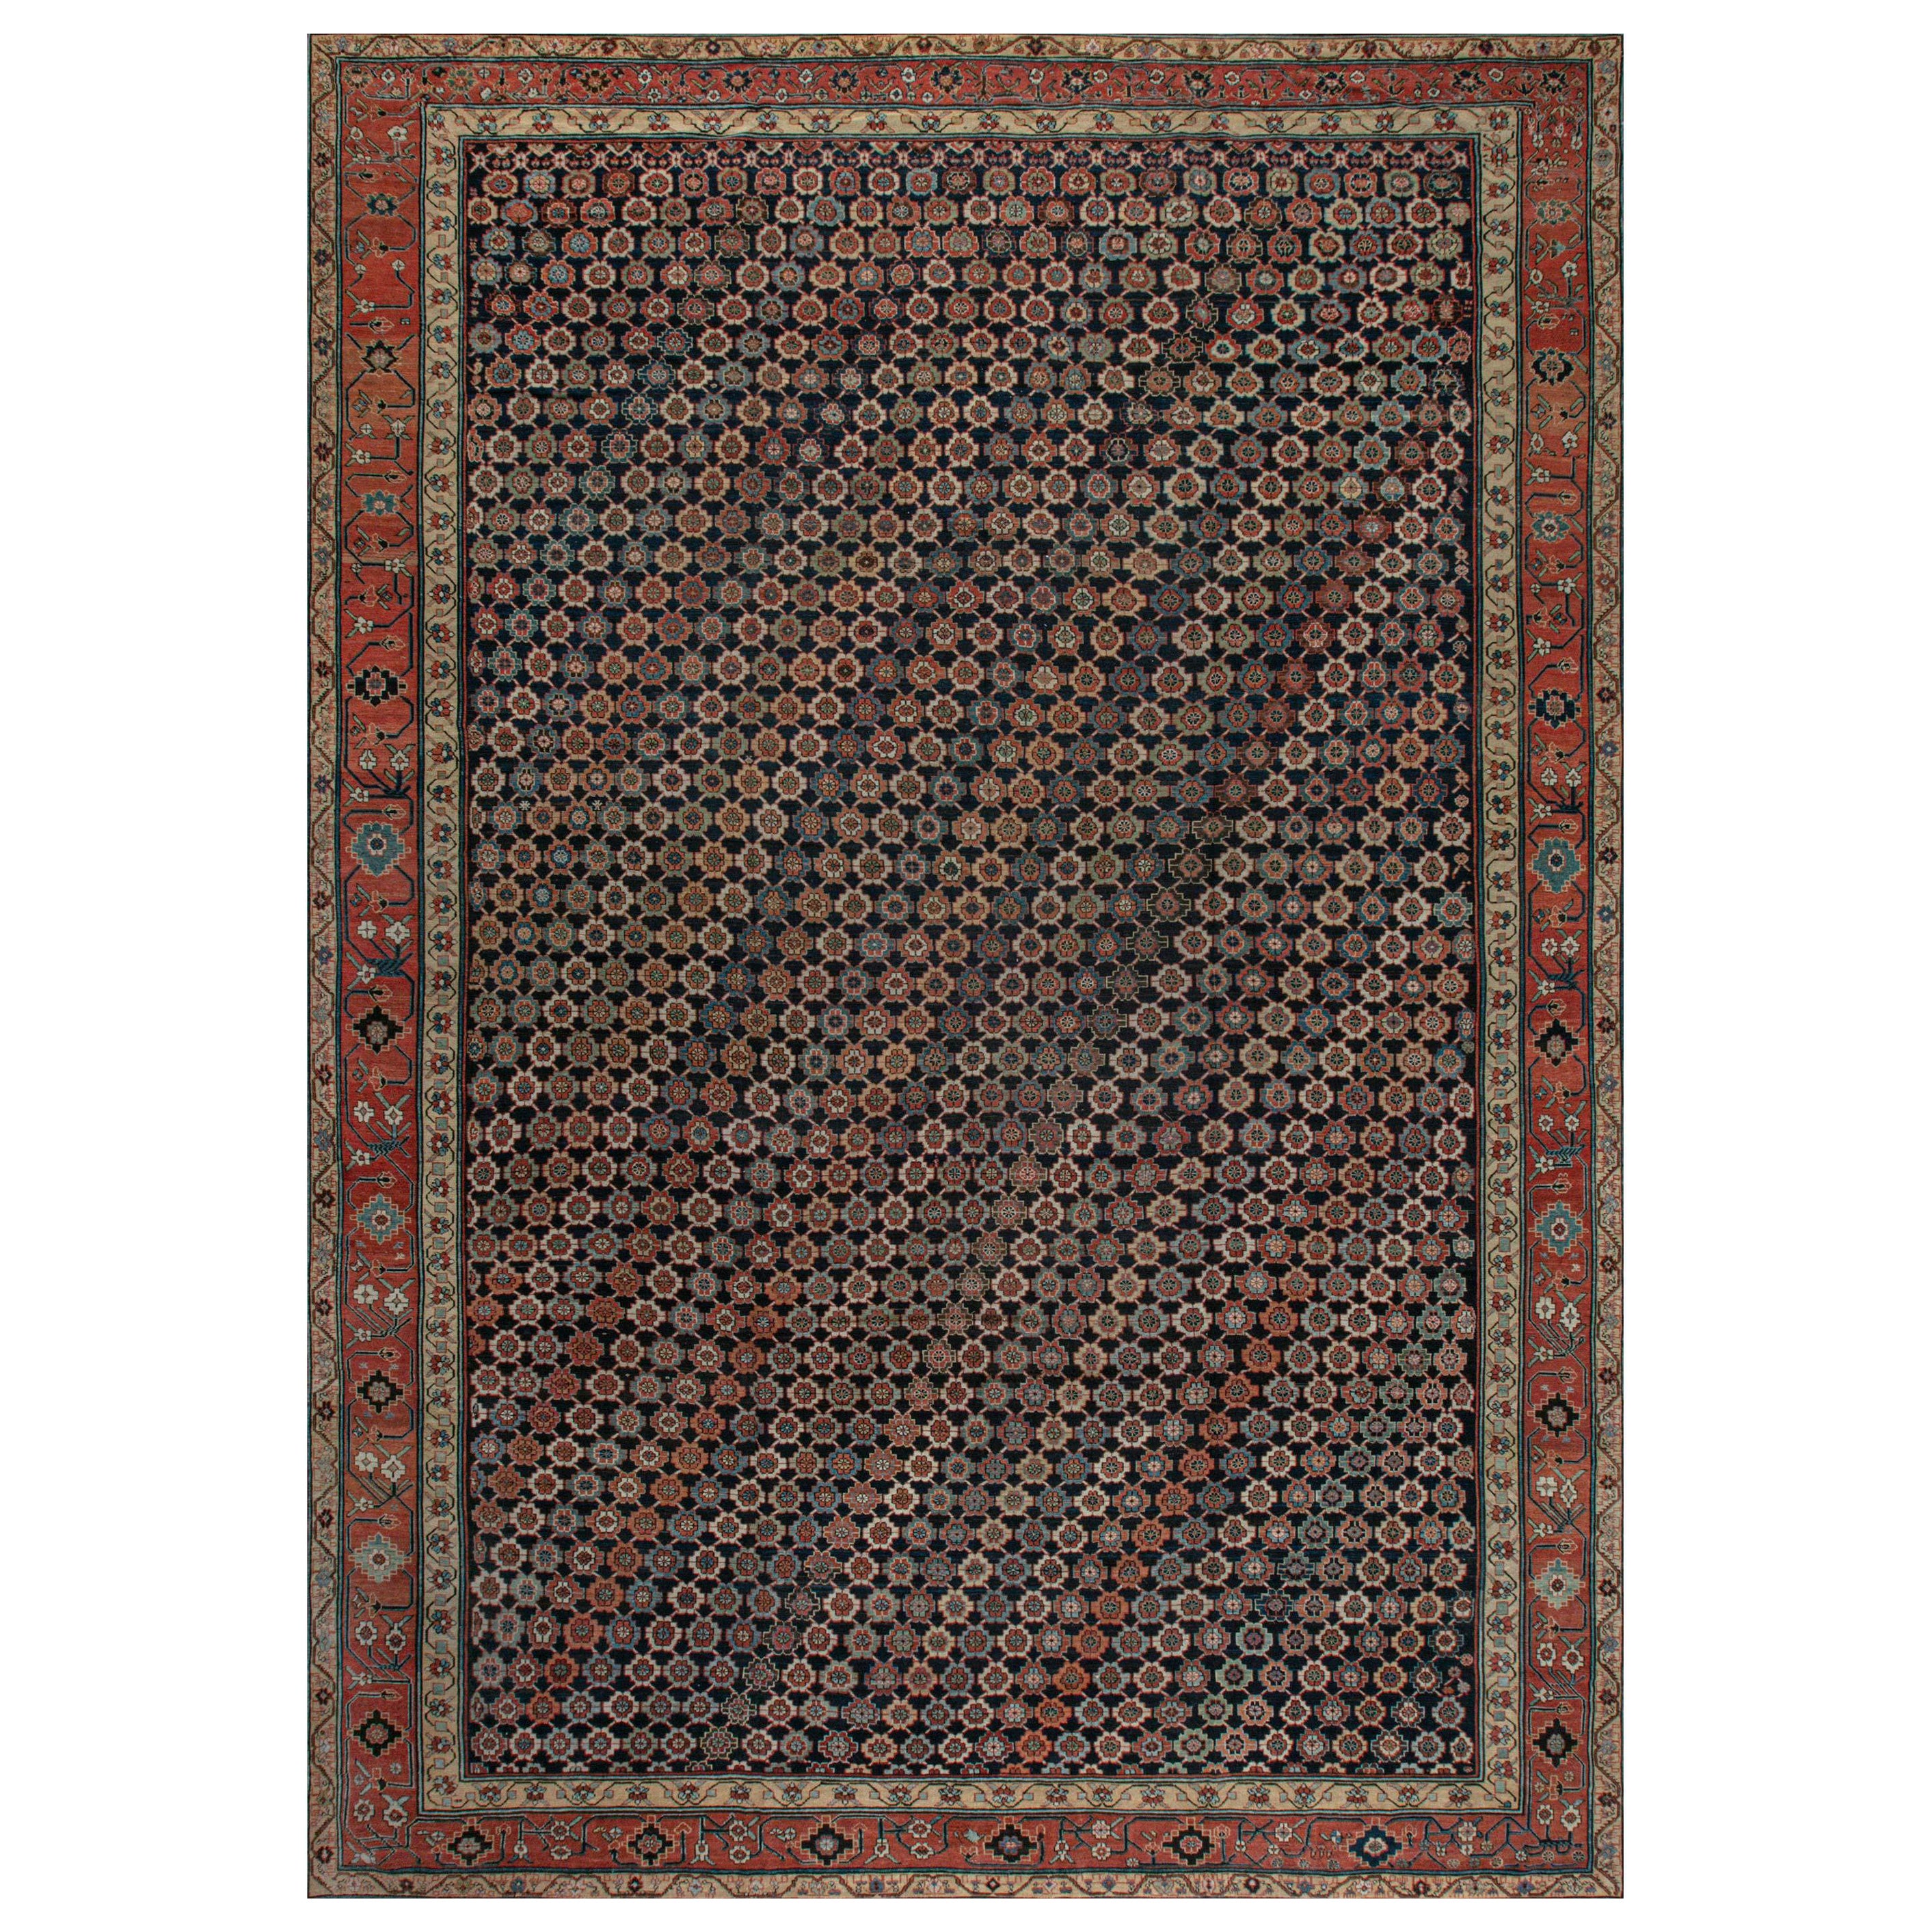 Large Antique Northwest Persian Rug